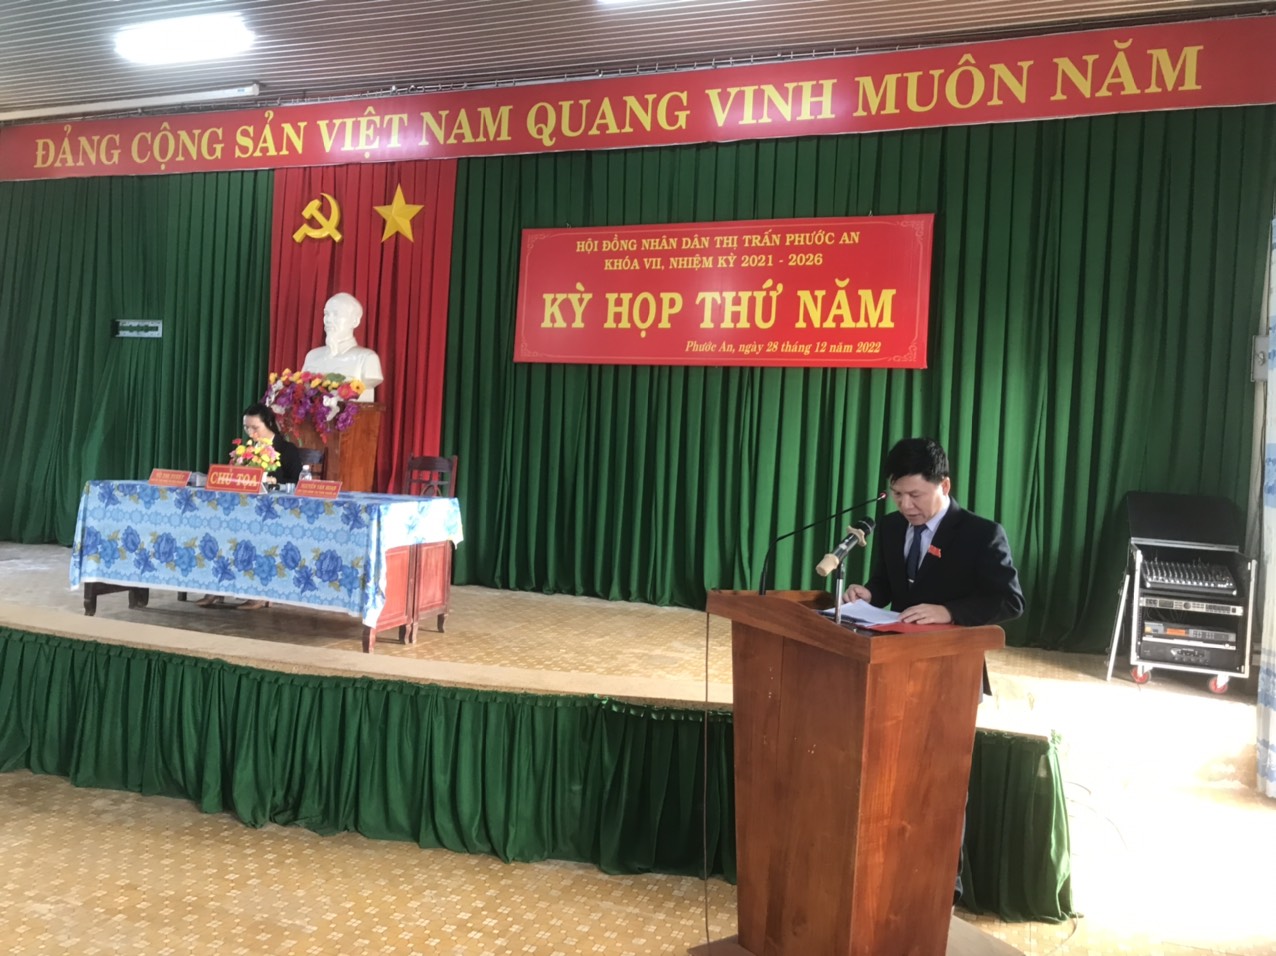 HĐND thị trấn Phước An khóa VII, nhiệm kỳ 2021-2026 tổ chức kỳ họp thứ năm